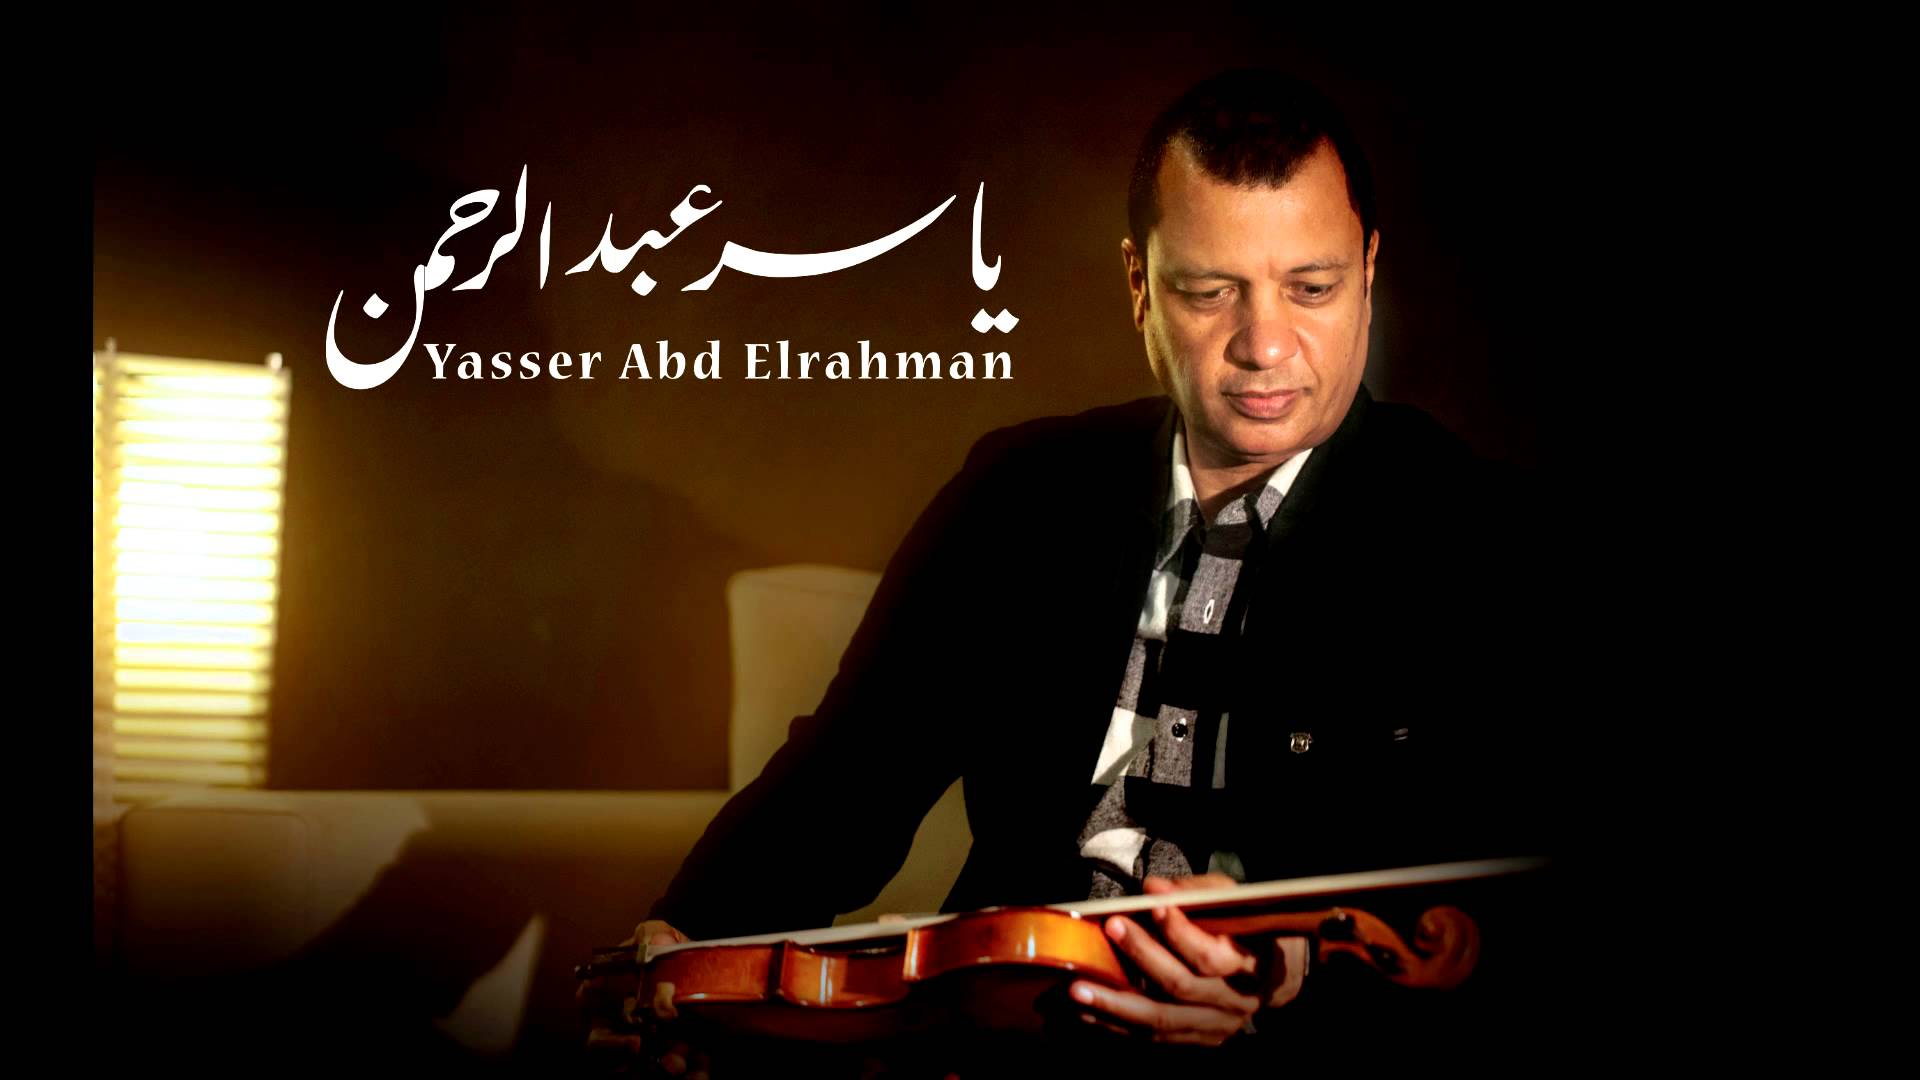 الموسيقار ياسر عبد الرحمن من اشهر موسيقاه في الافلام فيلم ناصر 56